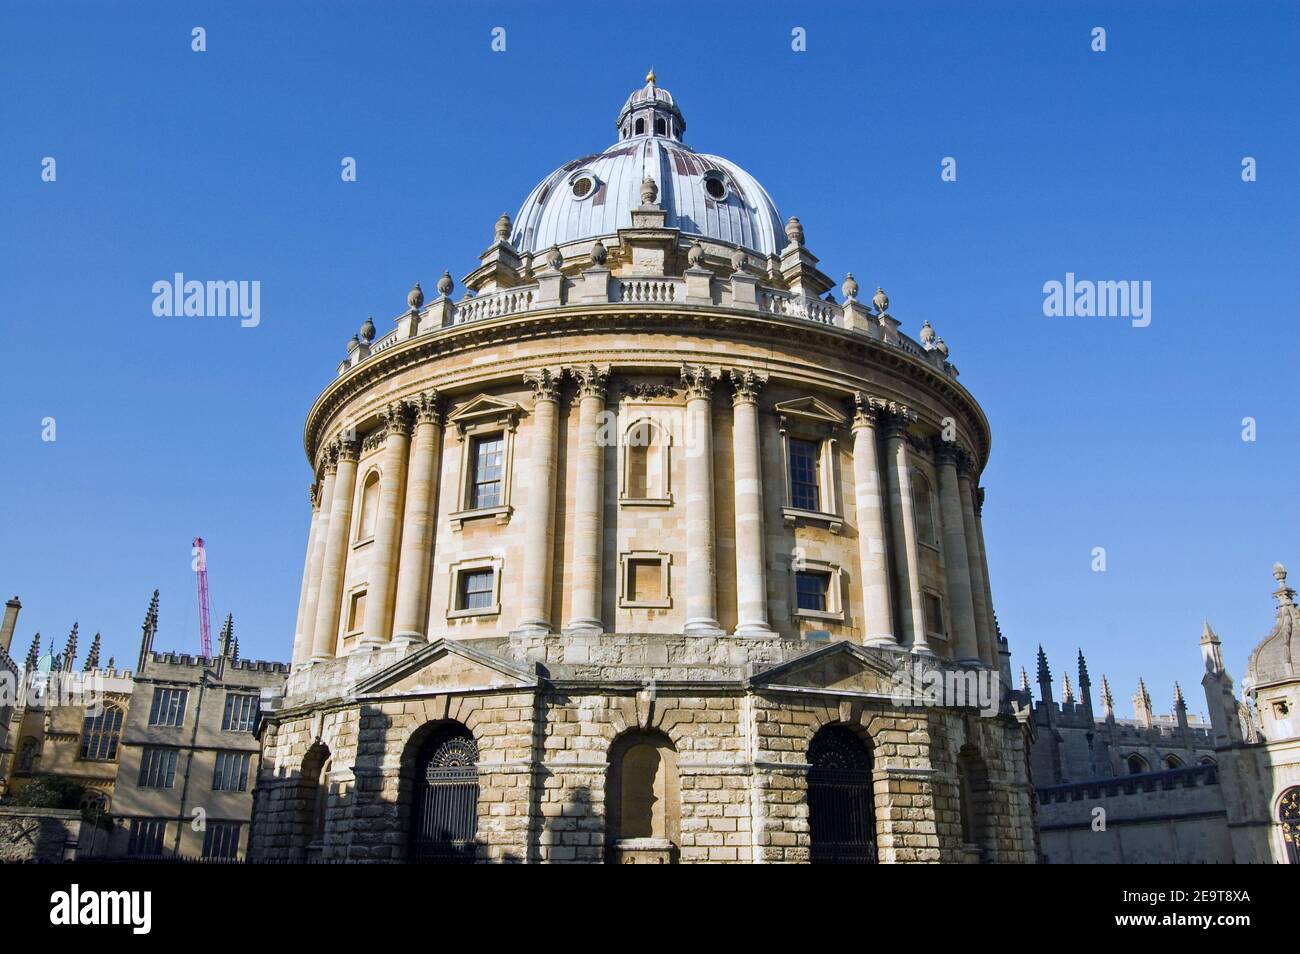 La célèbre caméra ronde Radcliffe, qui fait partie de l'université d'Oxford. Abrite la bibliothèque scientifique. Banque D'Images